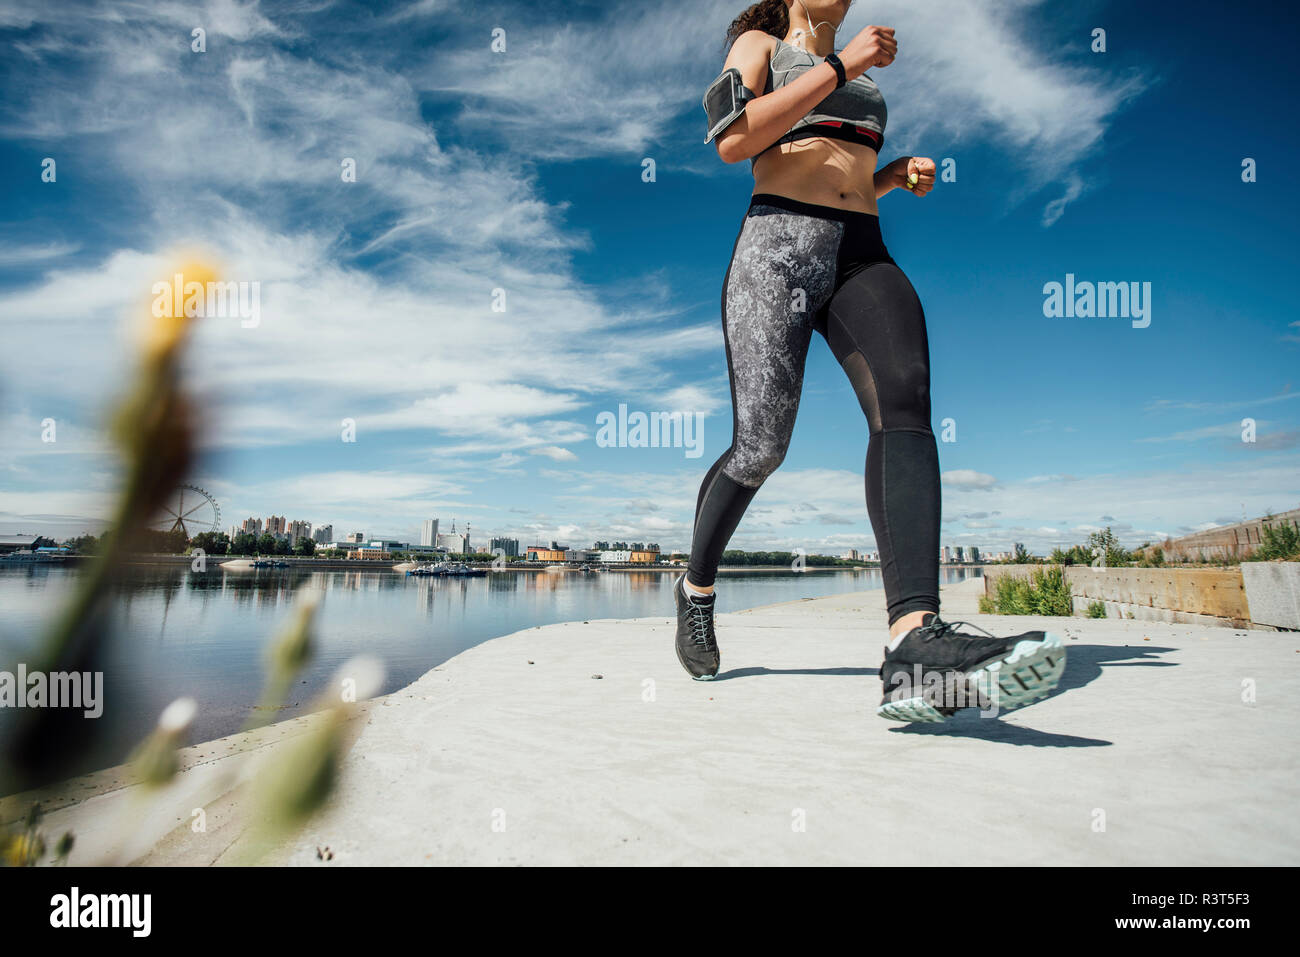 Junge athletische Frau am Flußufer läuft Stockfoto